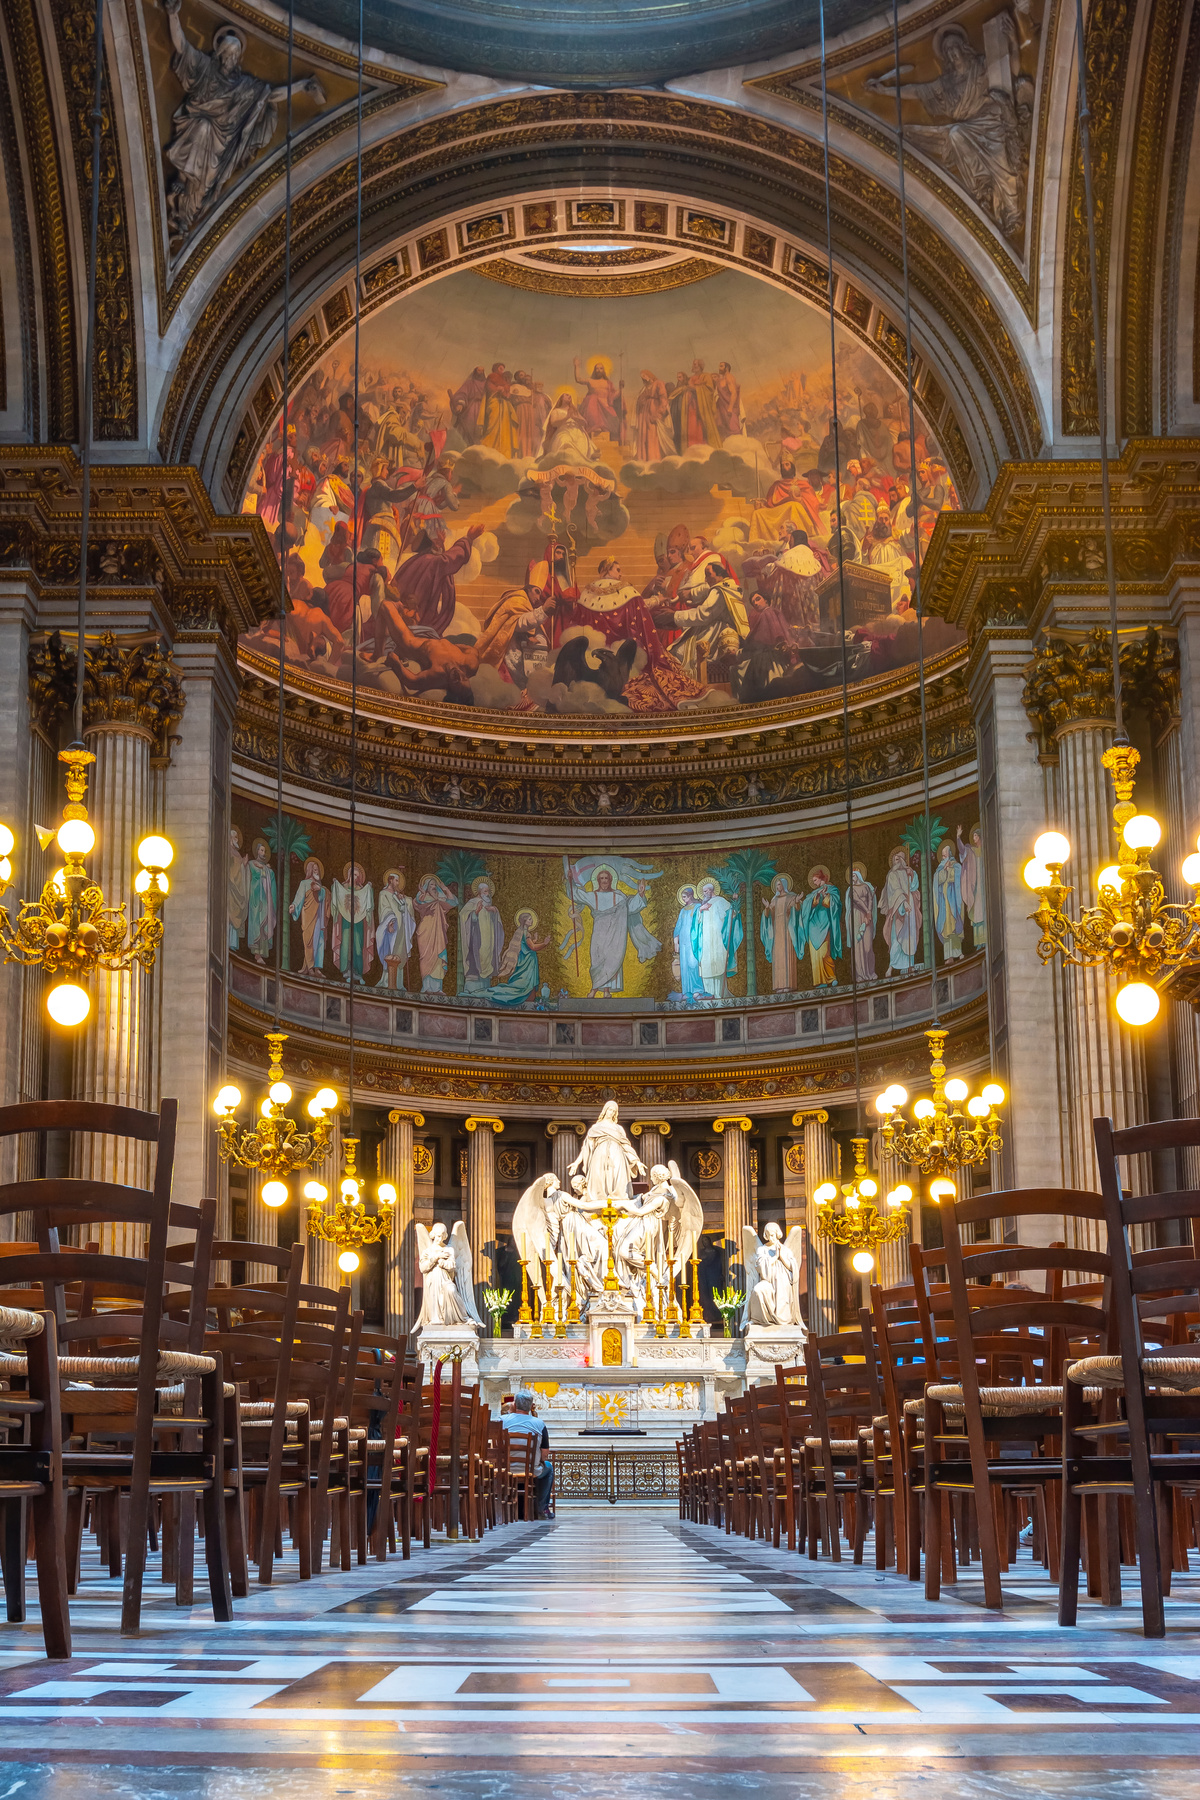 Madeleine Church (La Madeleine) interior, Paris, France